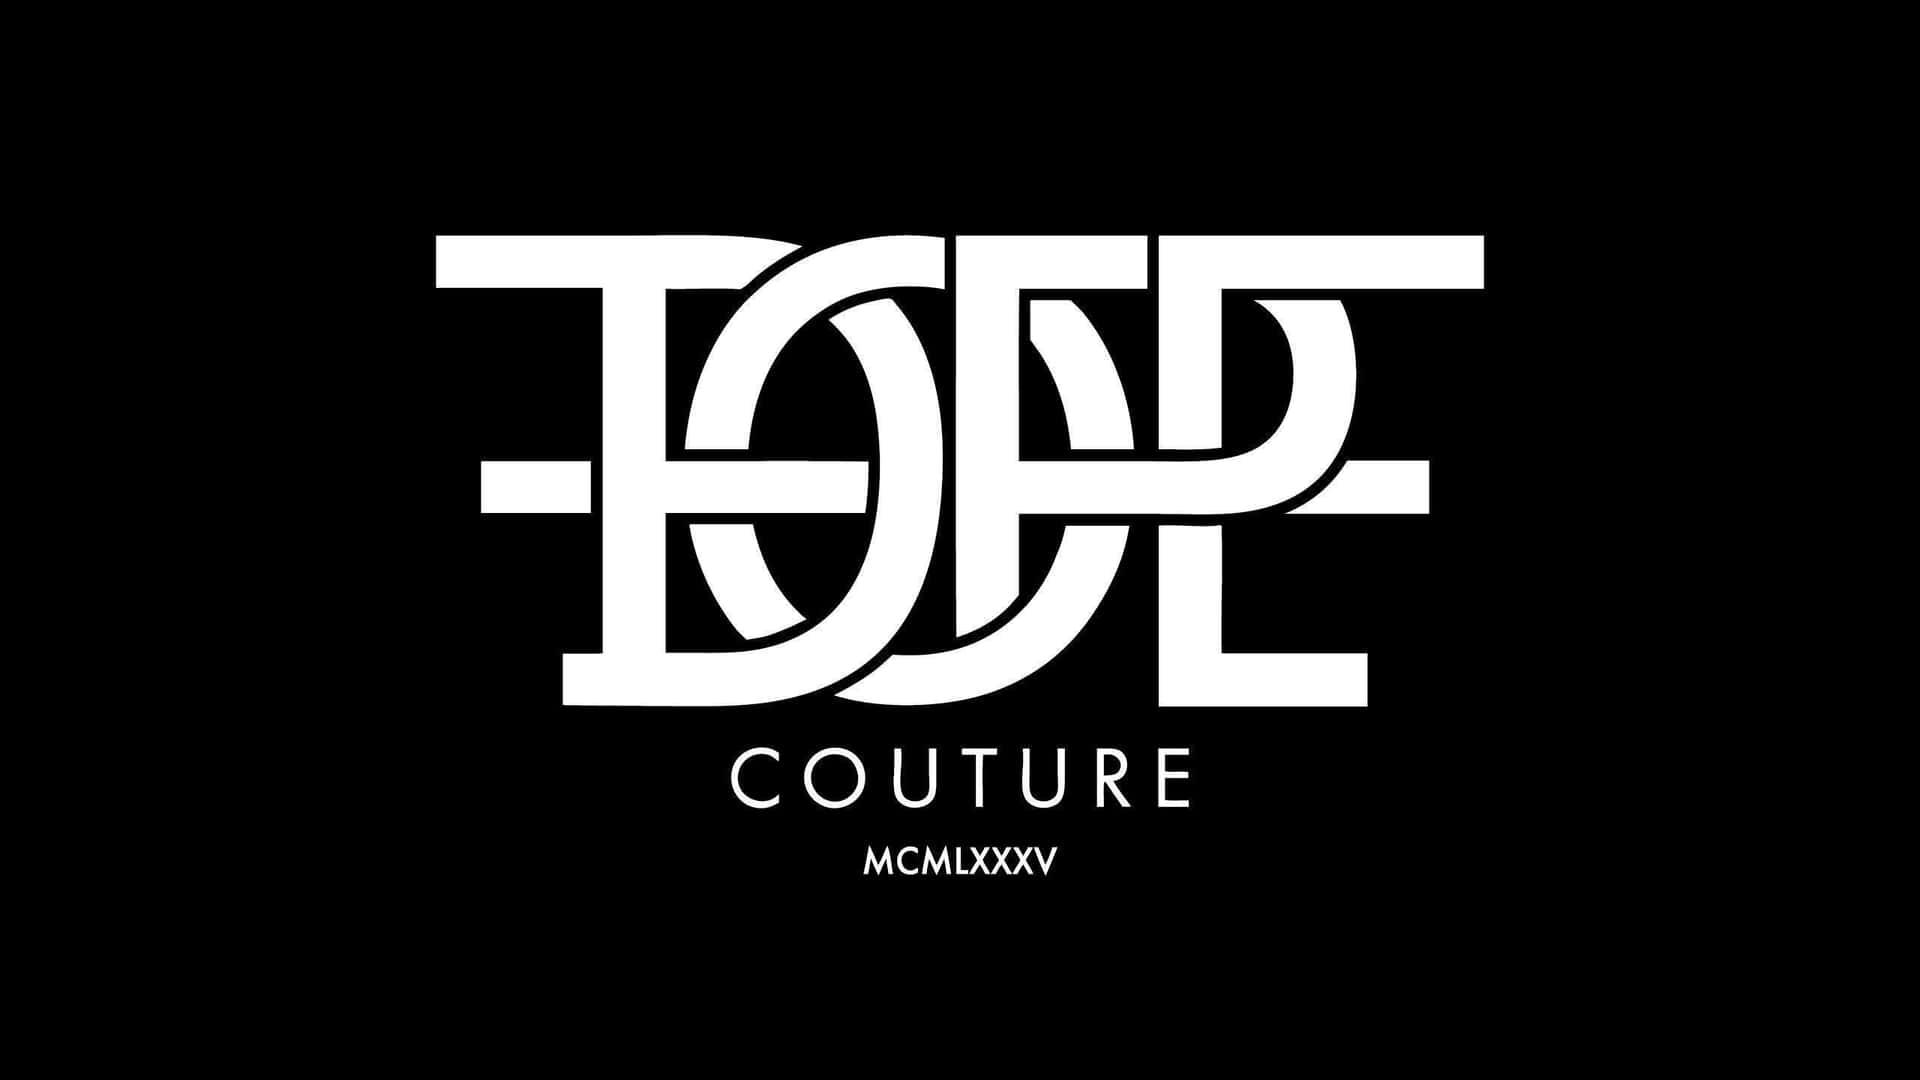 Ensvartvit Logotyp För Modeetiketten Couture. Wallpaper